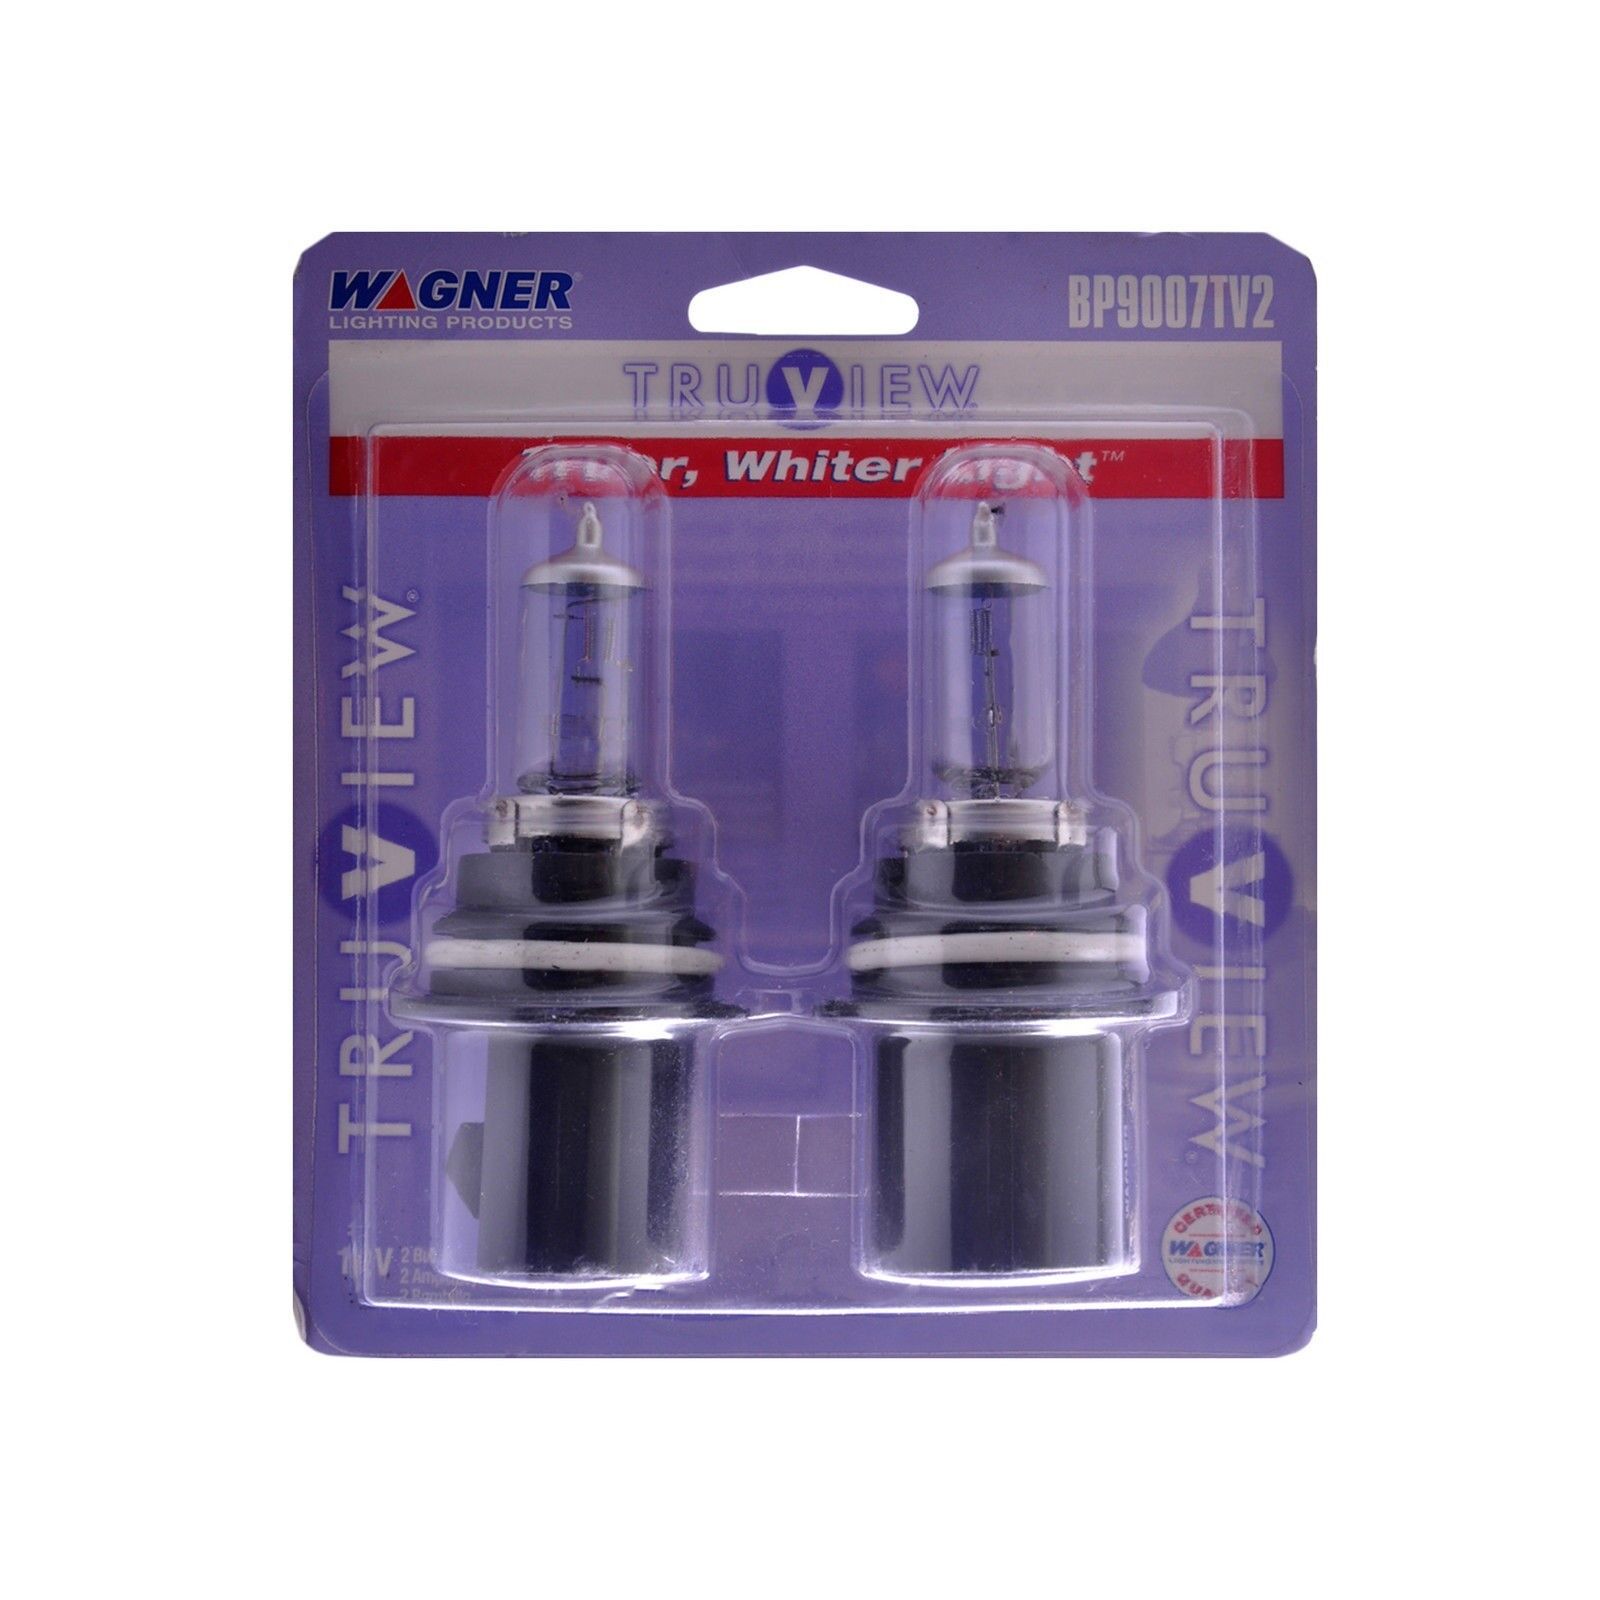 Wagner Lighting BP9007TV2 Headlight Bulb - TruView Capsules-Blister Pack